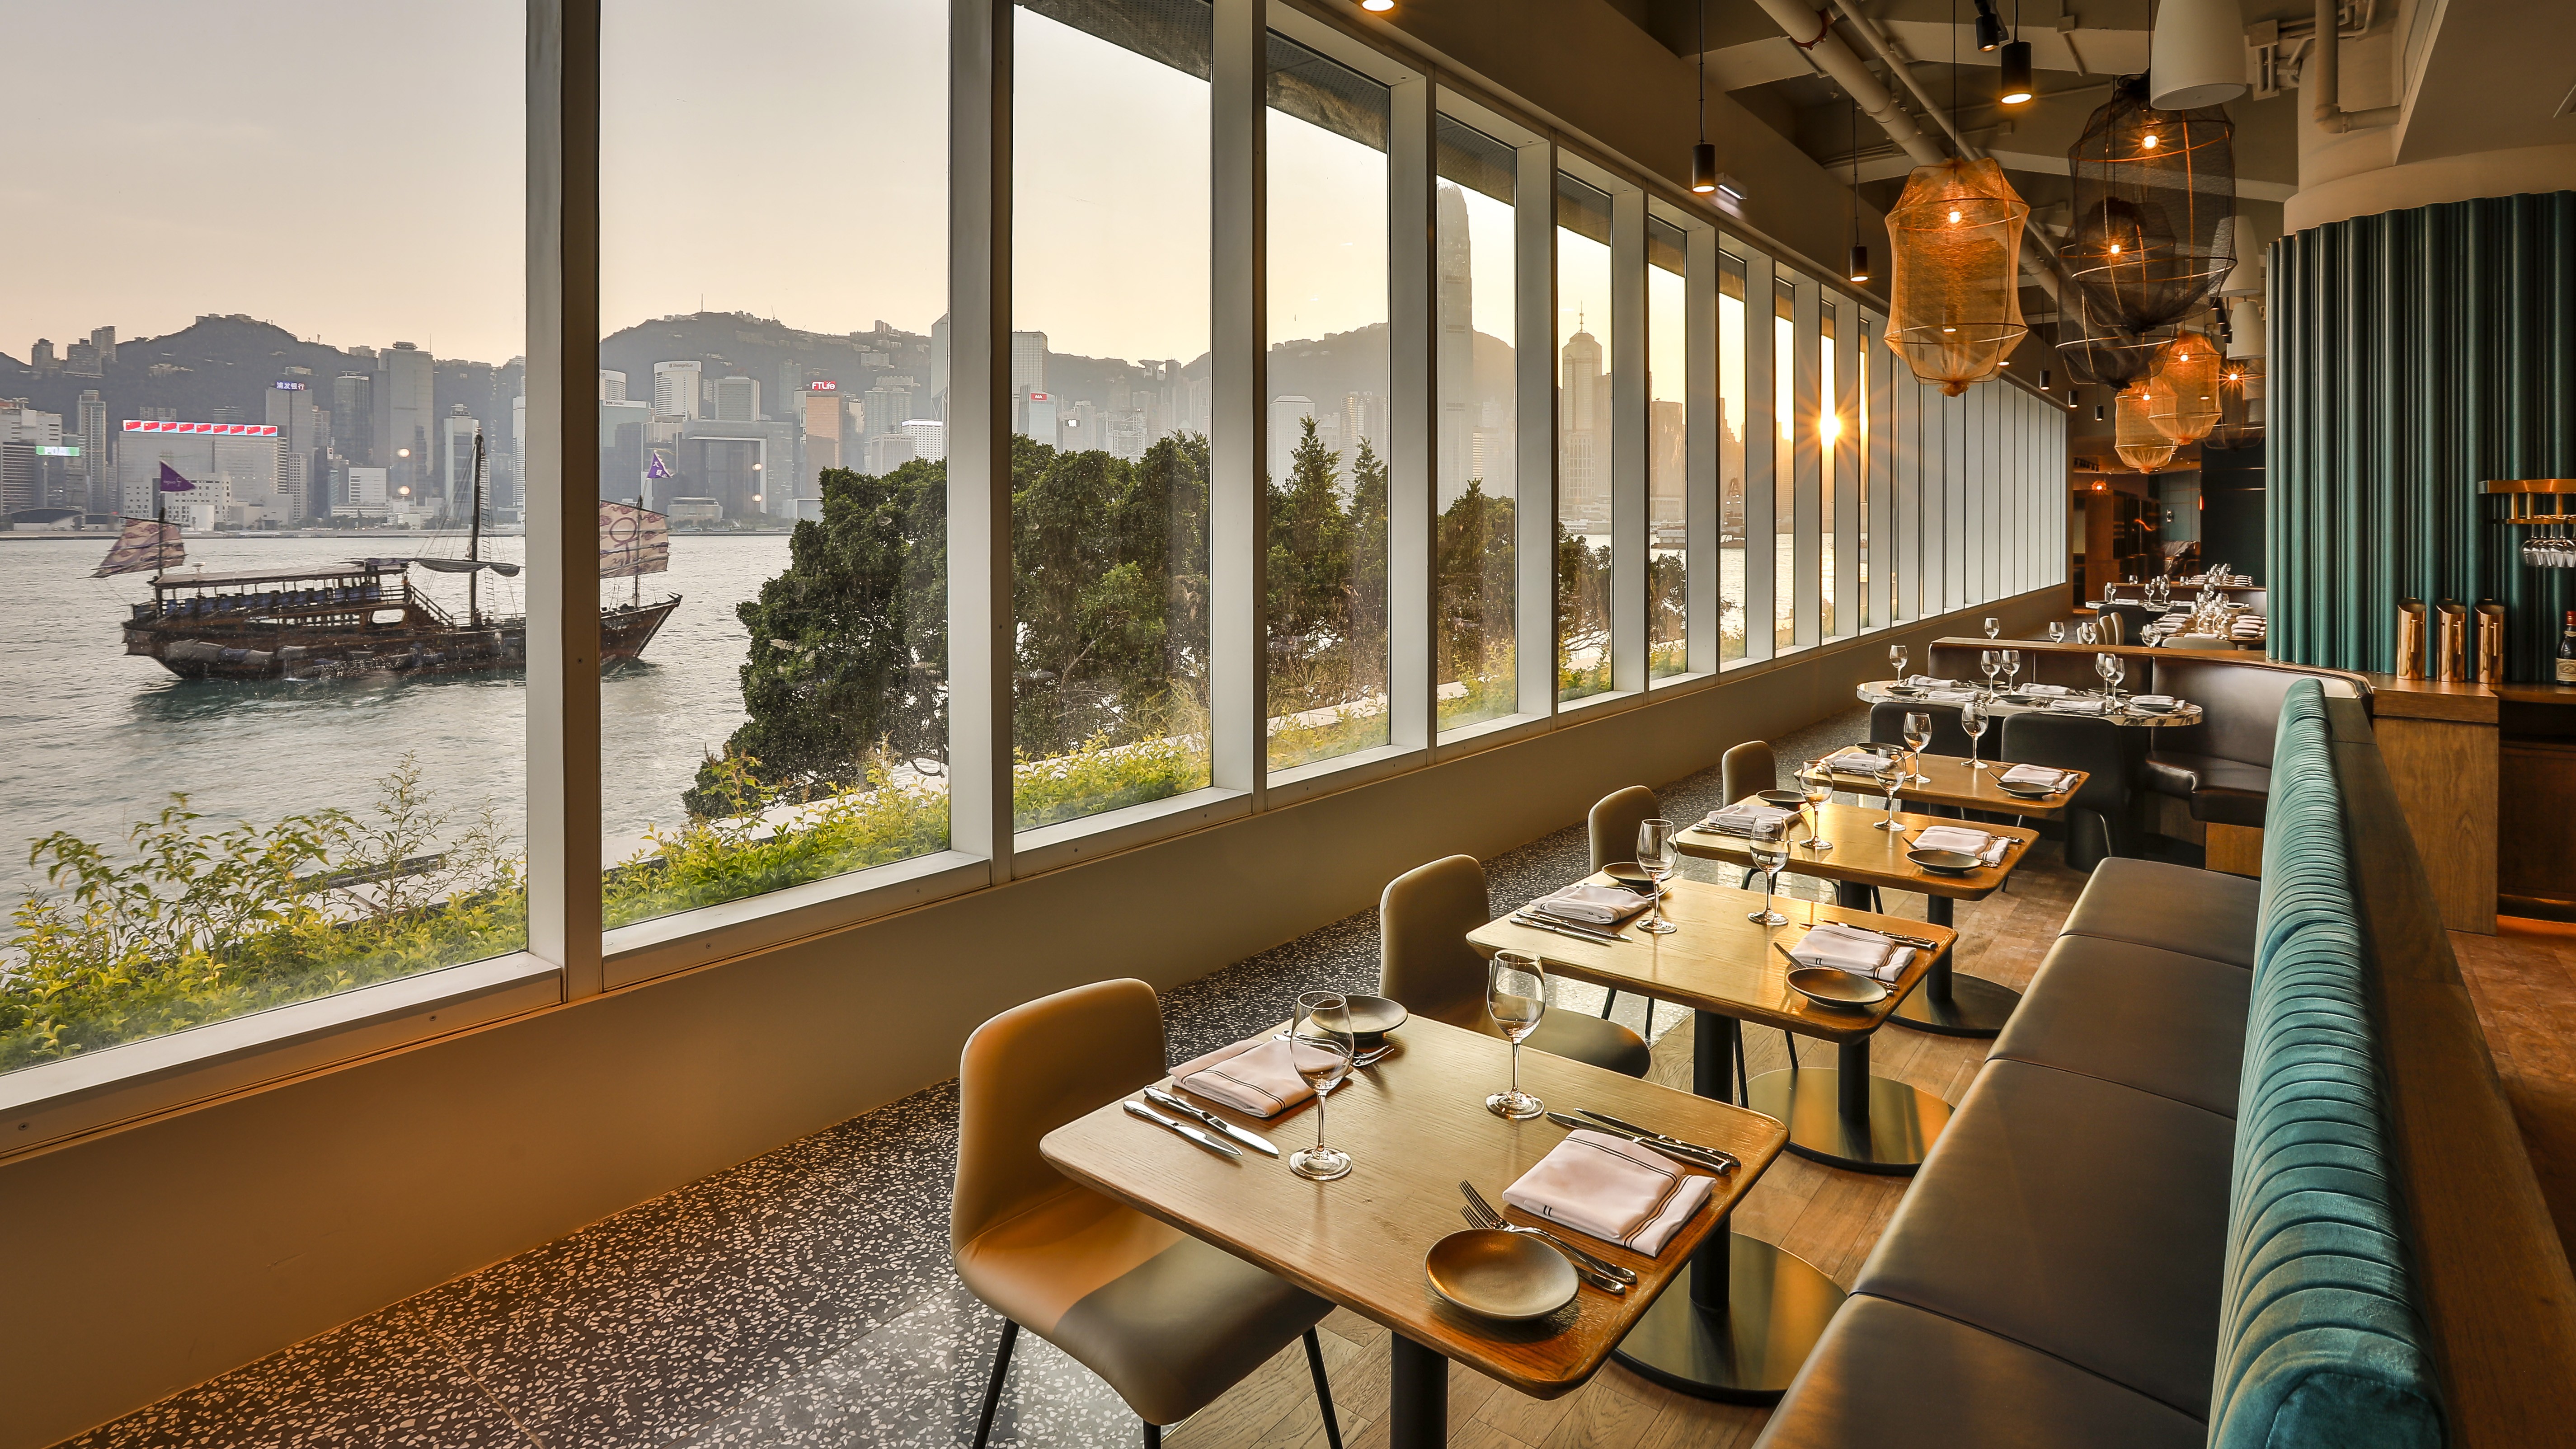 Hue Restaurant & Bar, at the Hong Kong Museum of Art, has great views. Photos: Woolly Pig